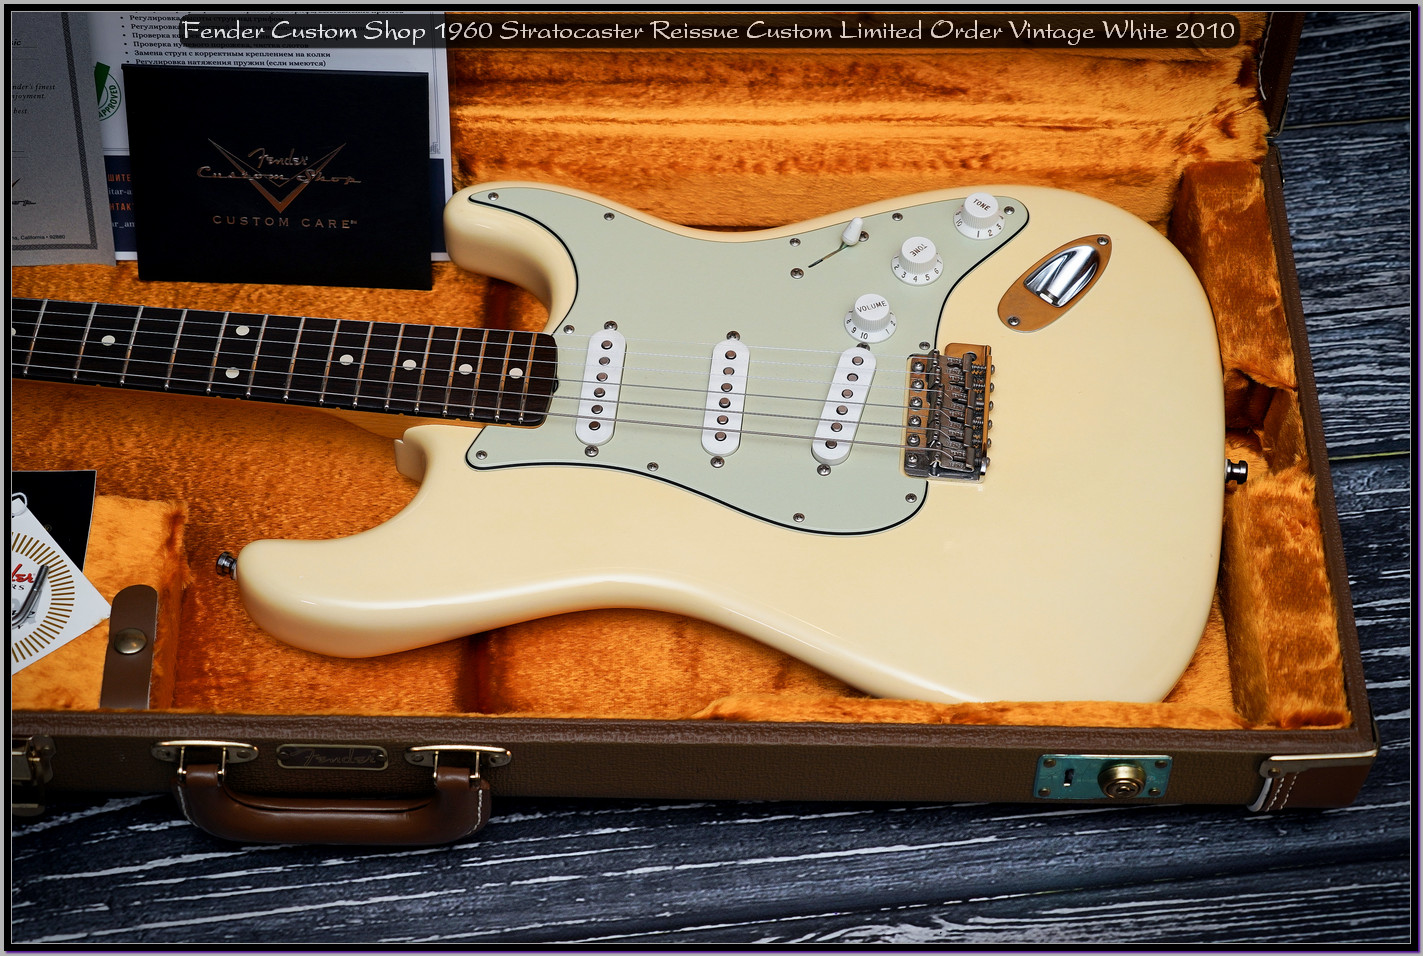 Fender Custom Shop 1960 Stratocaster Reissue Custom Limited Order Vintage White 2010 10_x1400.jpg